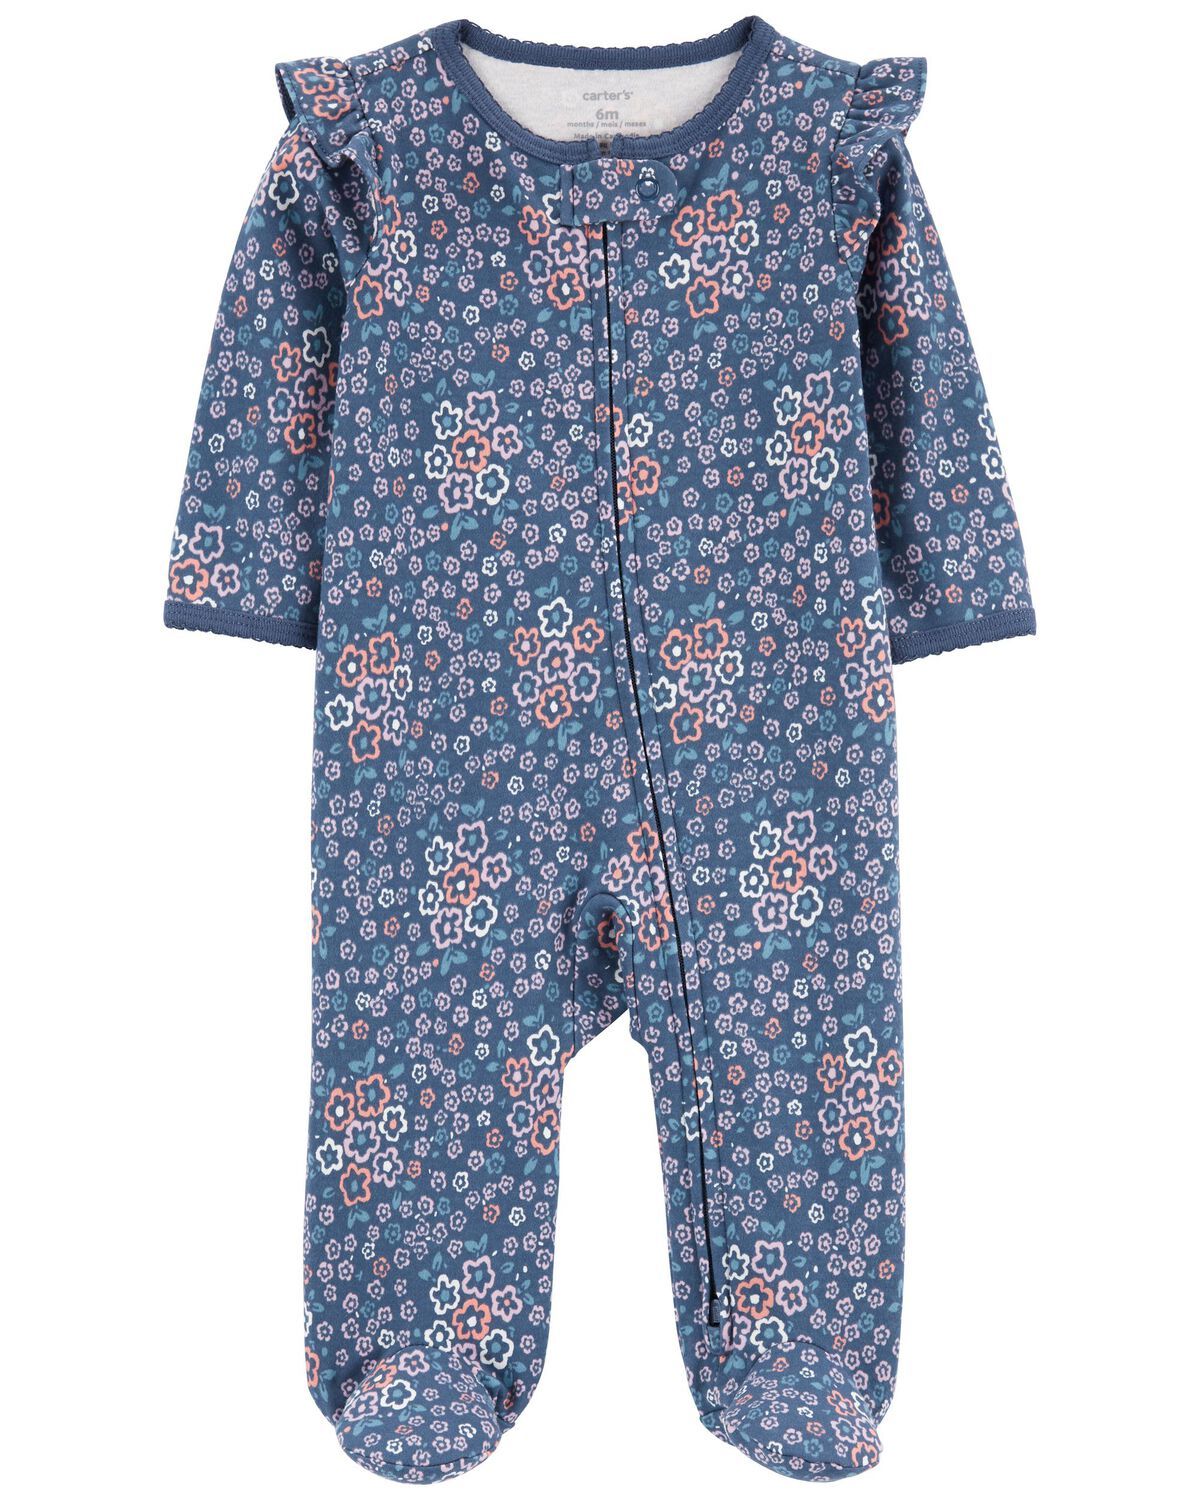 Baby Floral 2-Way Zip Cotton Sleep & Play Pajamas | Carter's